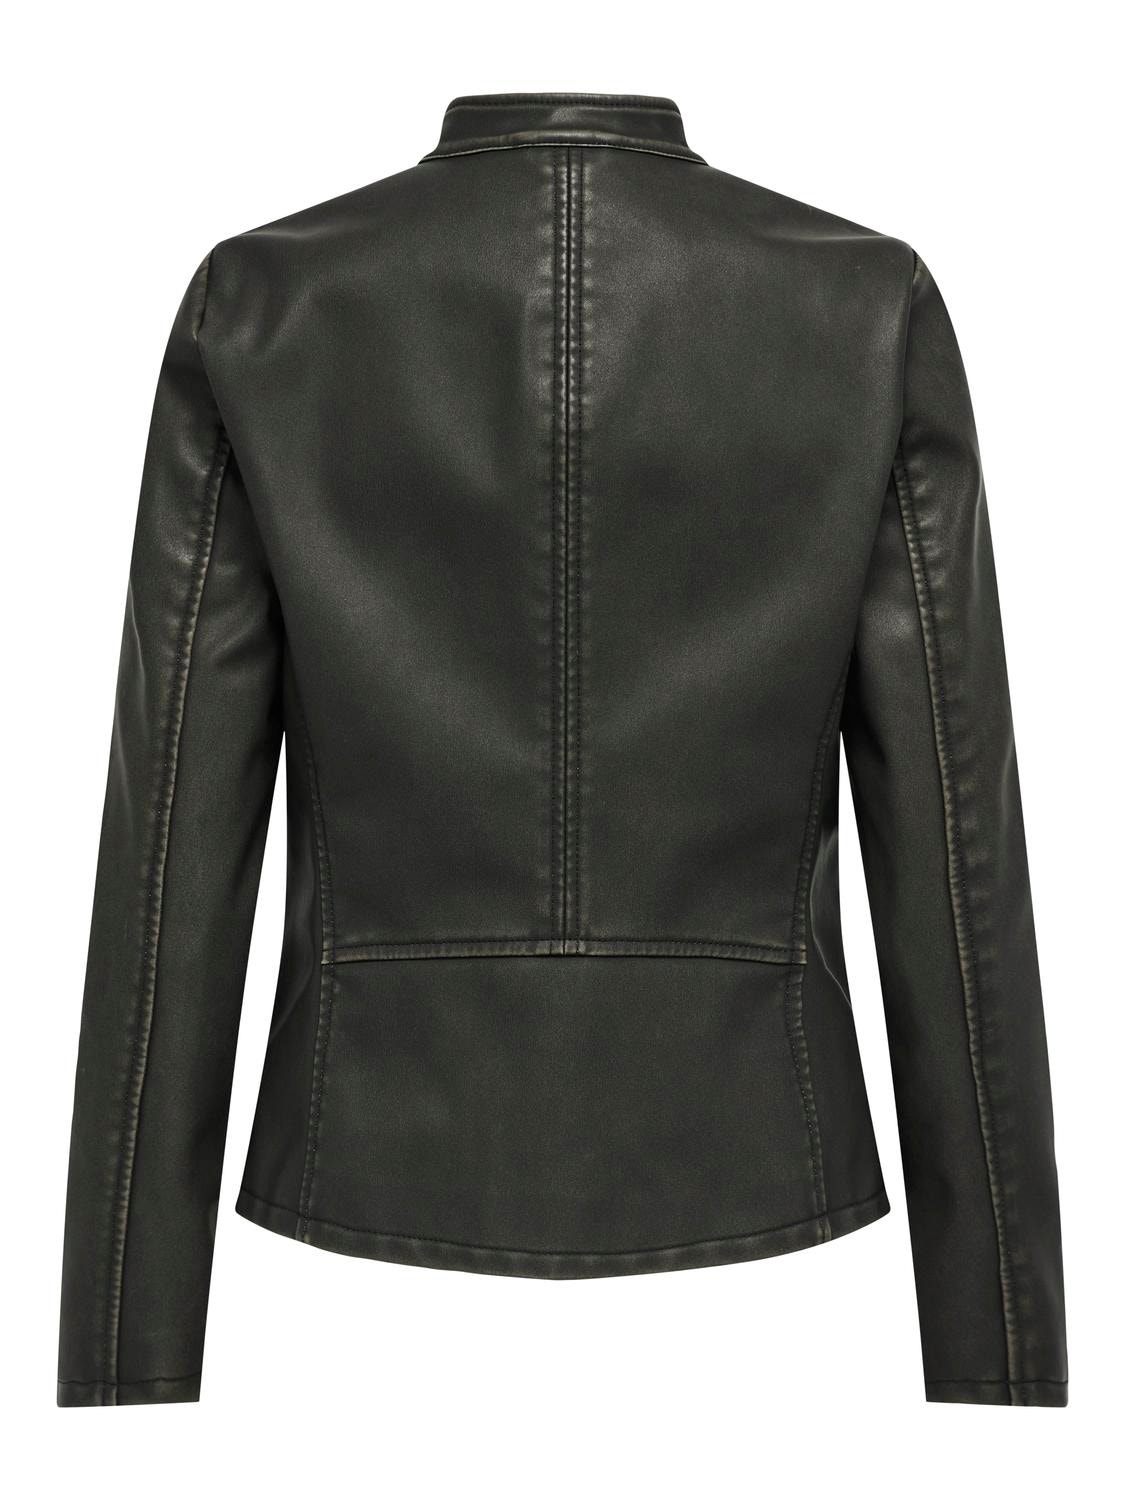 ONLY Biker jacket -Black - 15315882